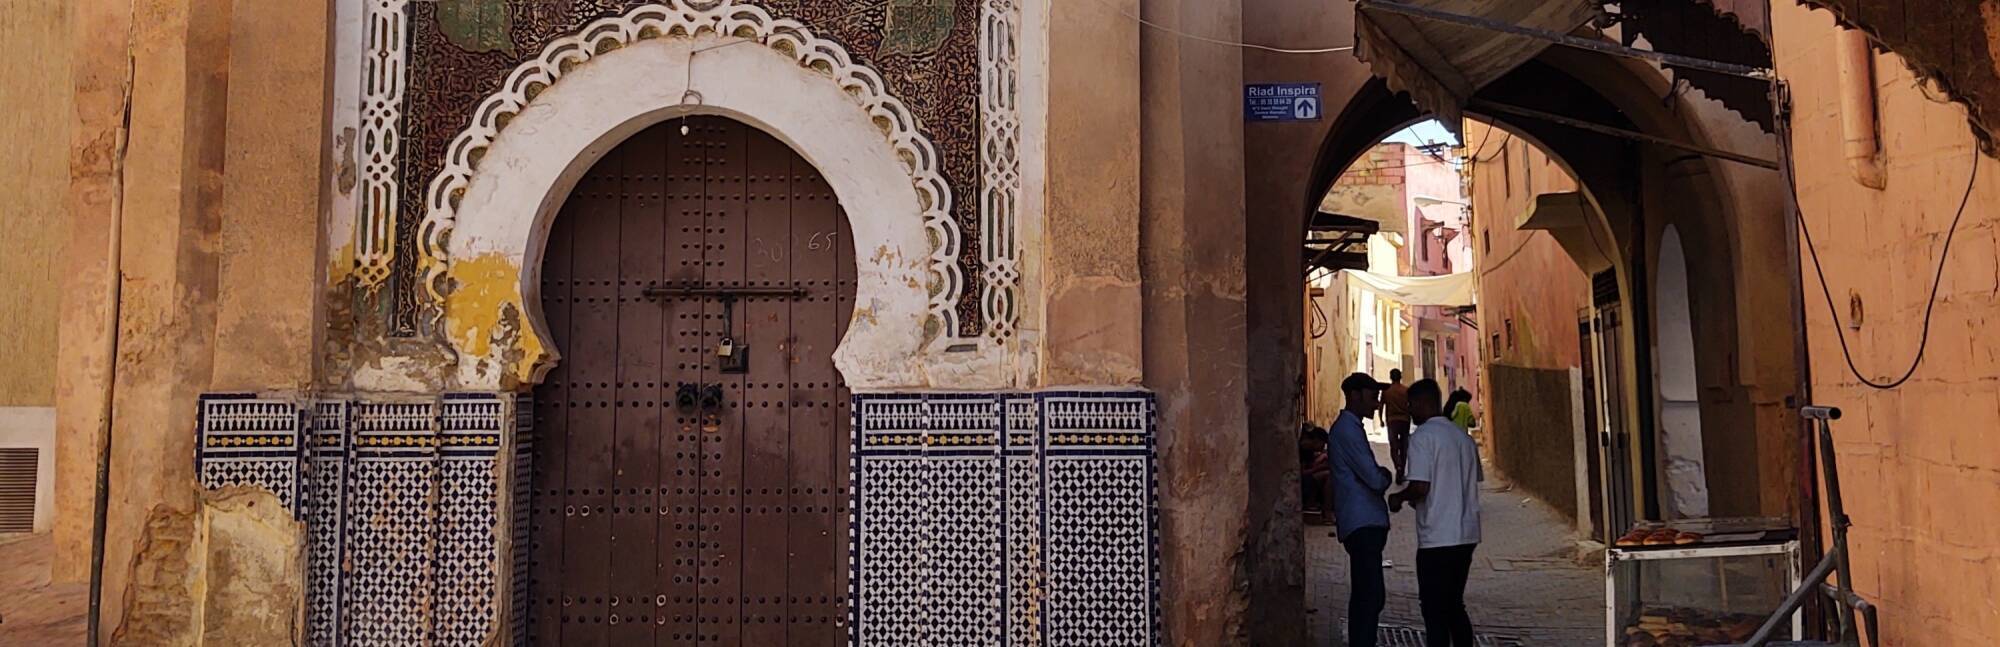 Two men speak in a narrow lane in the medina of Meknès.